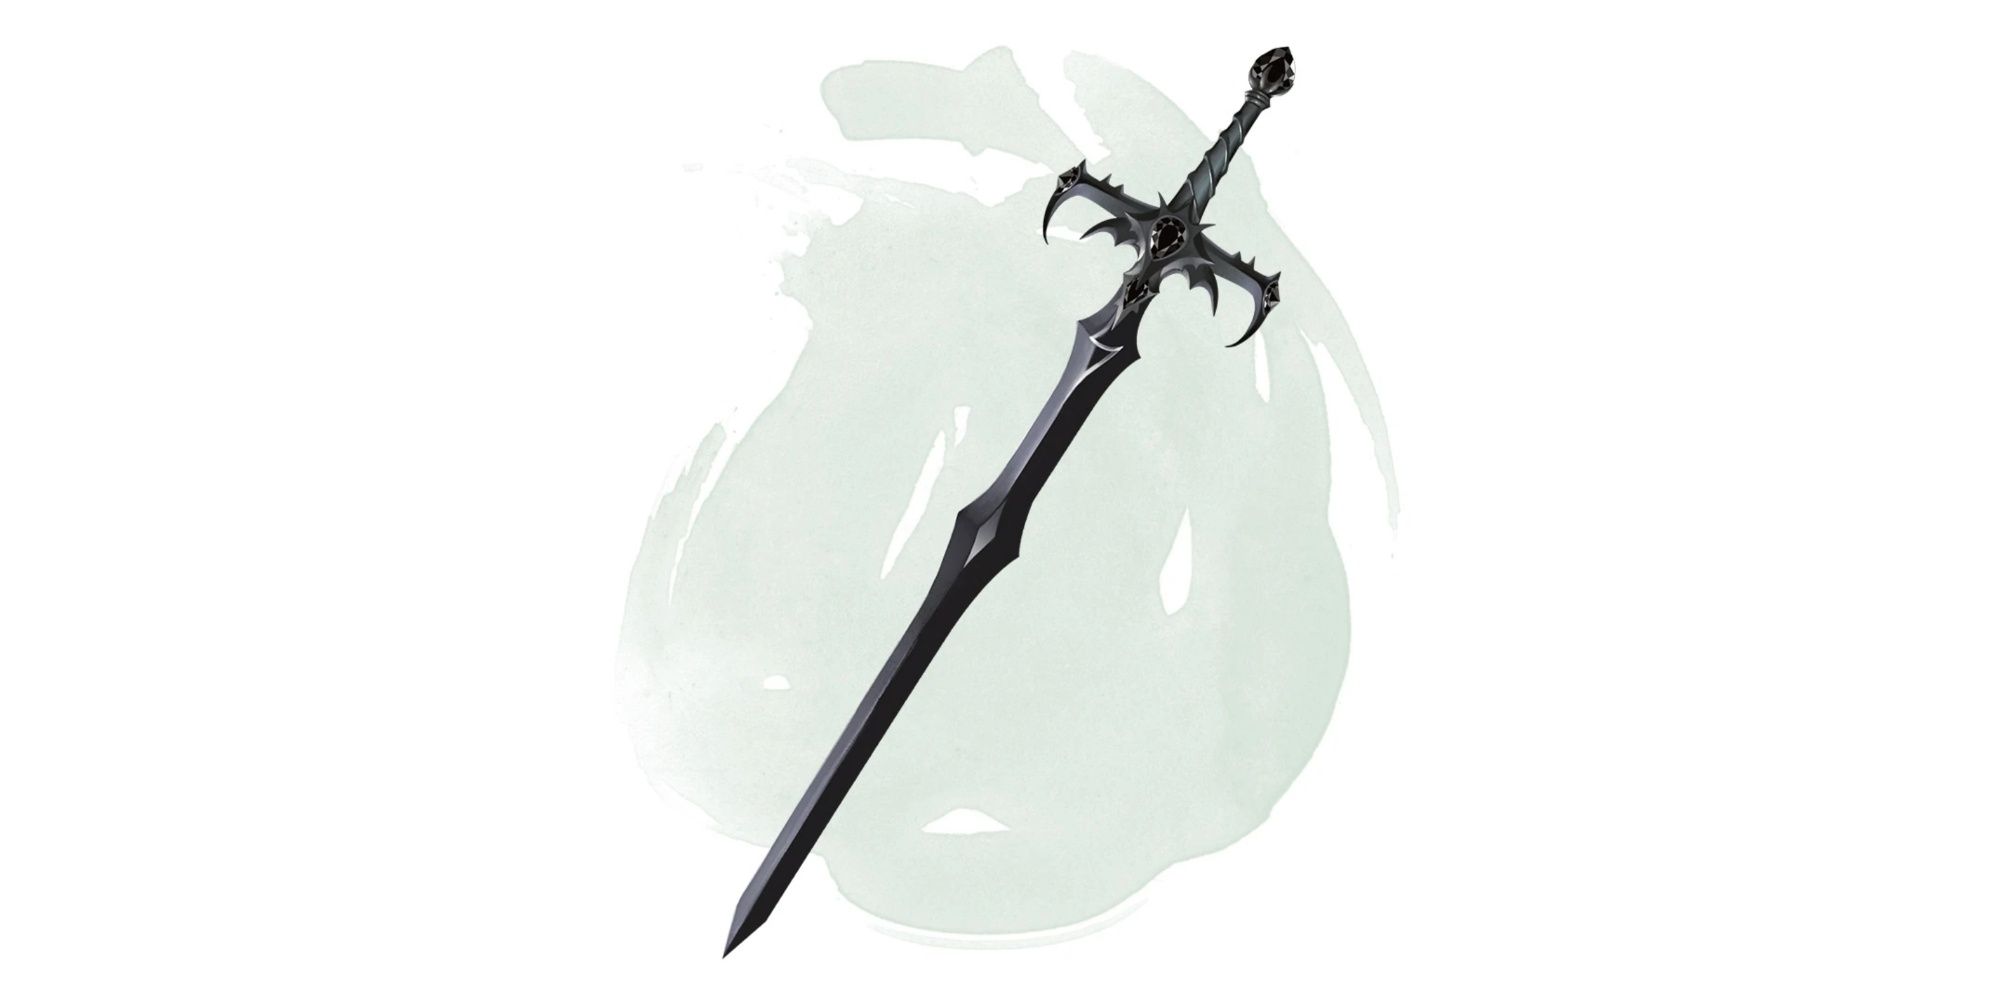 Sword of Kas